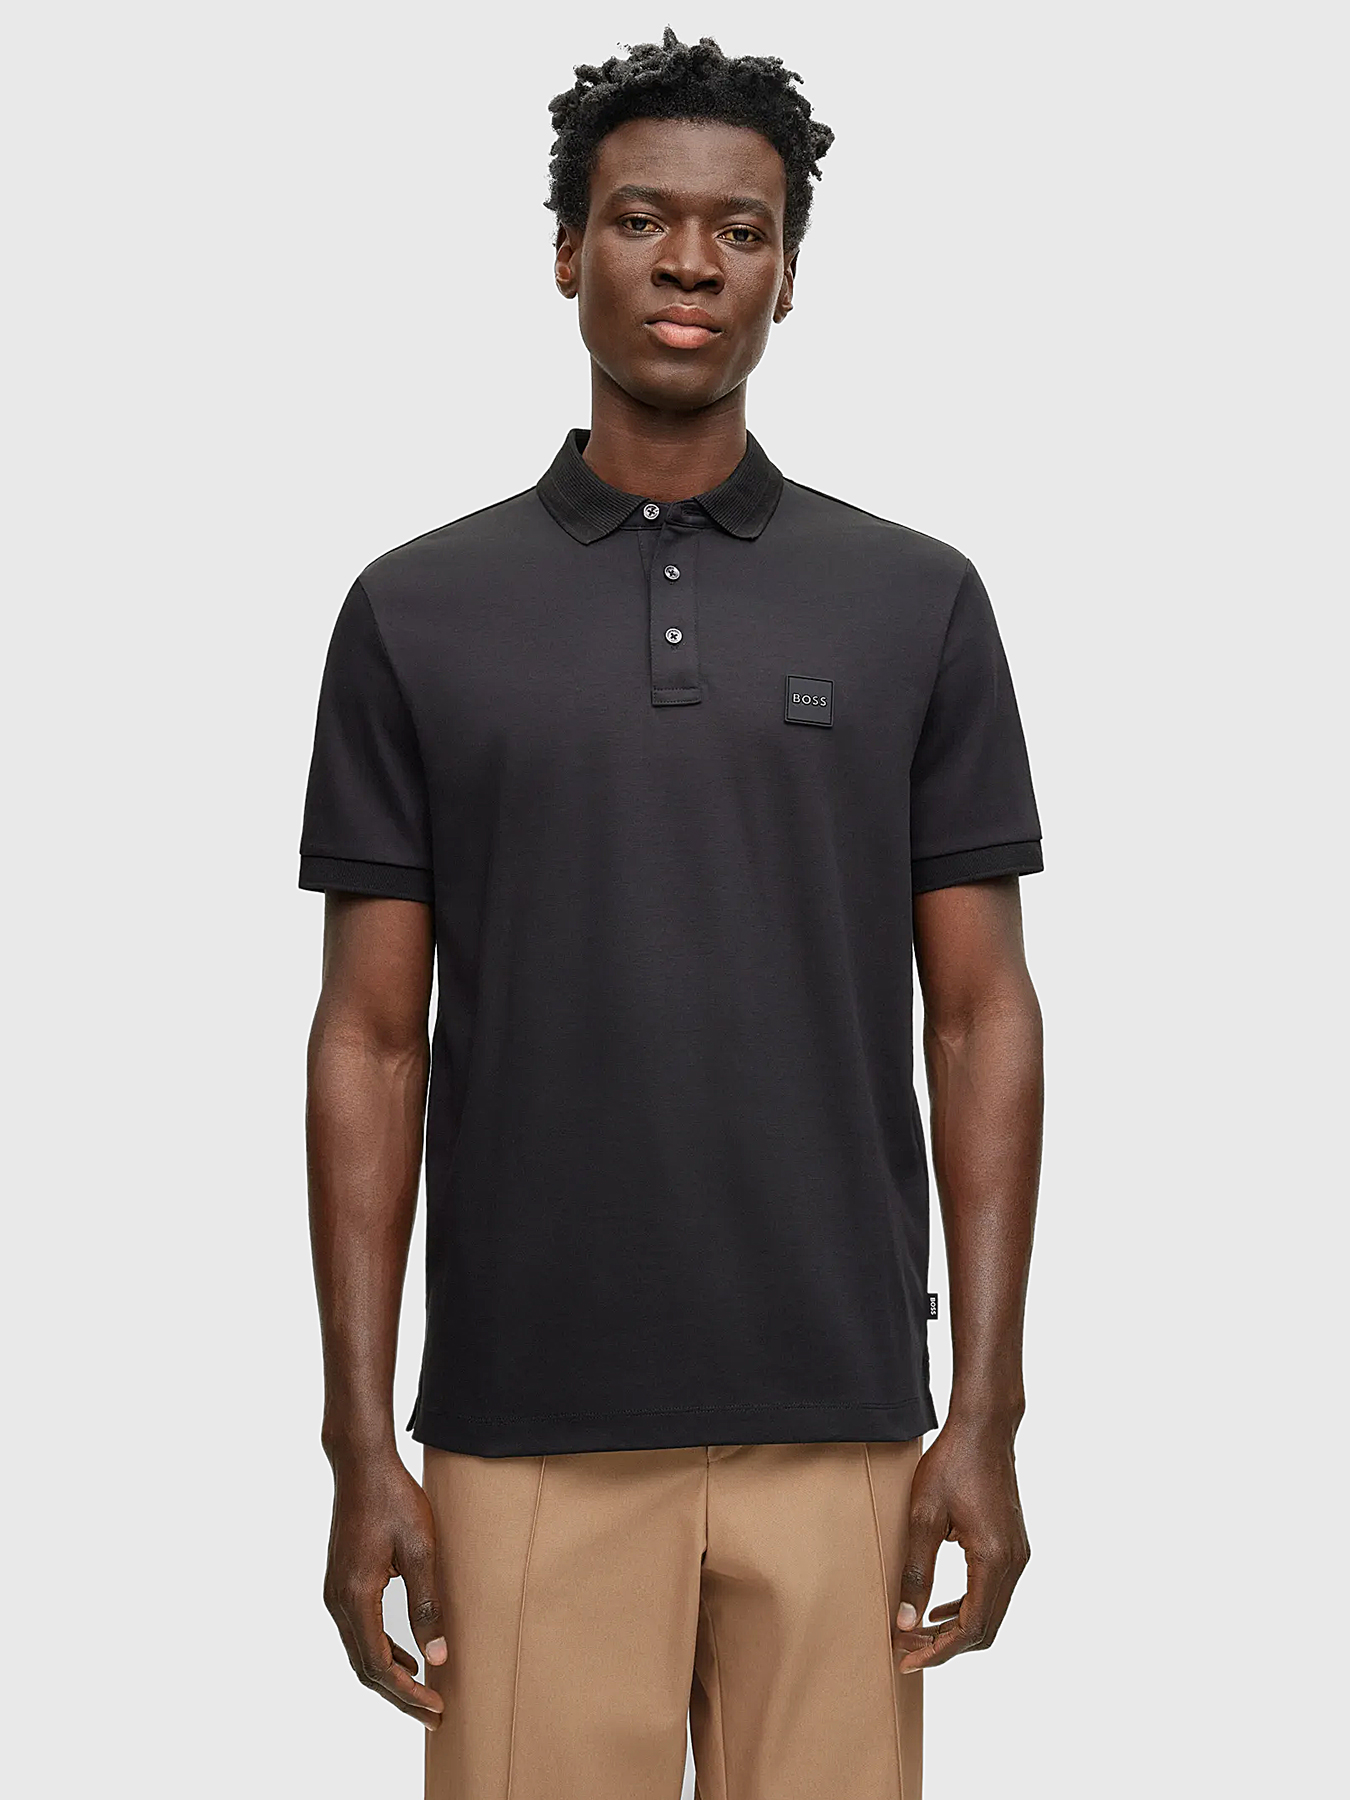 Black polo-shirt with logo detail brand BOSS — Globalbrandsstore.com/en